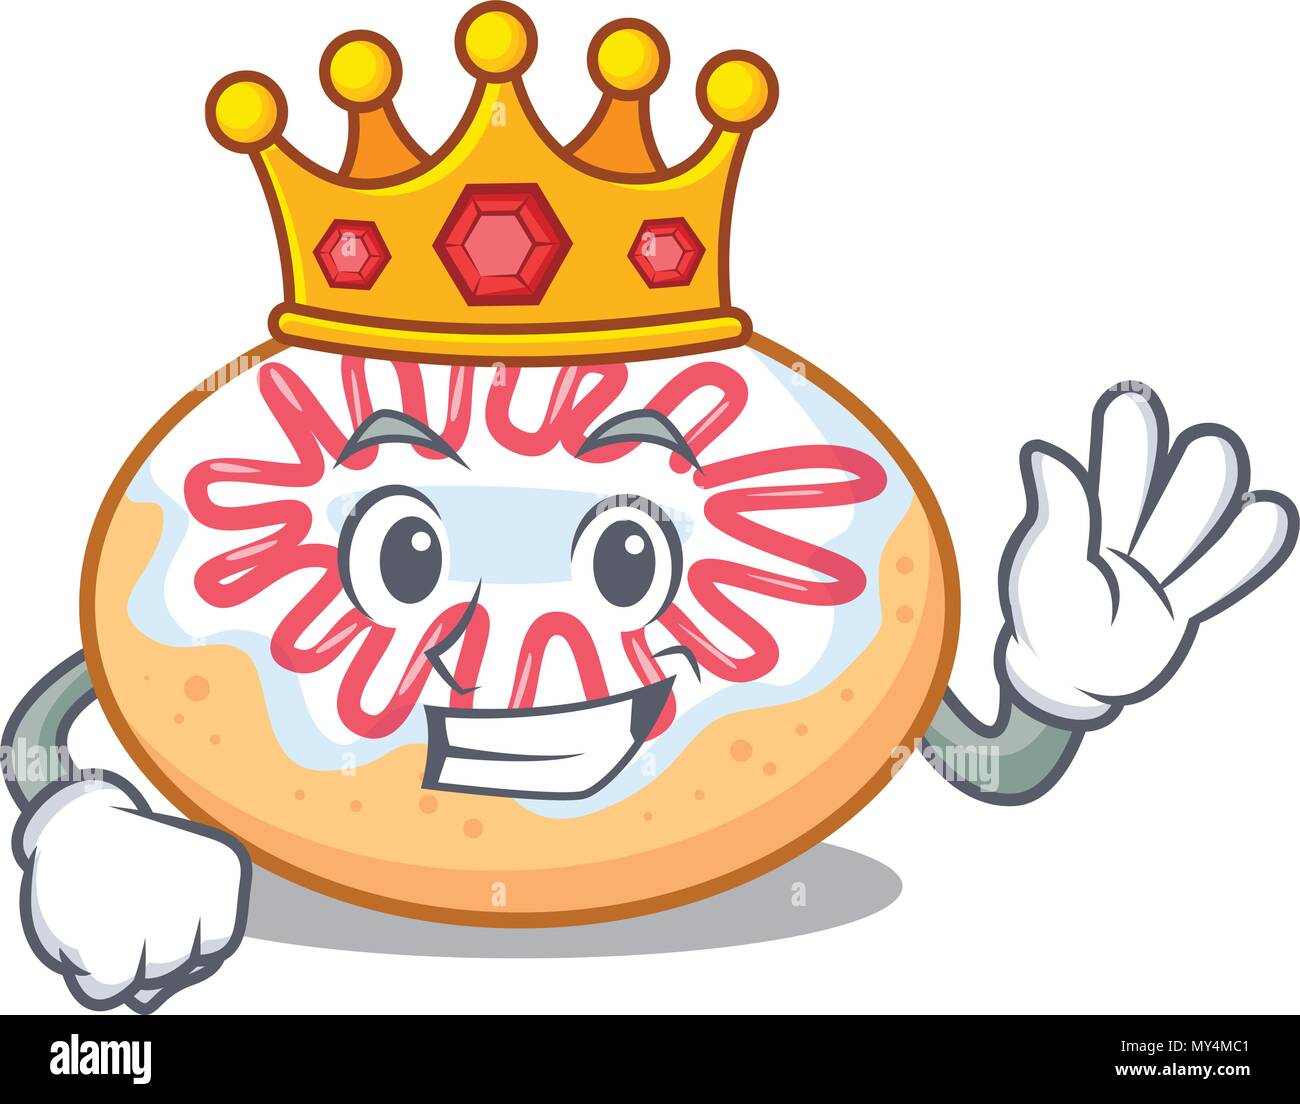 King jelly donut mascot cartoon Stock Vector